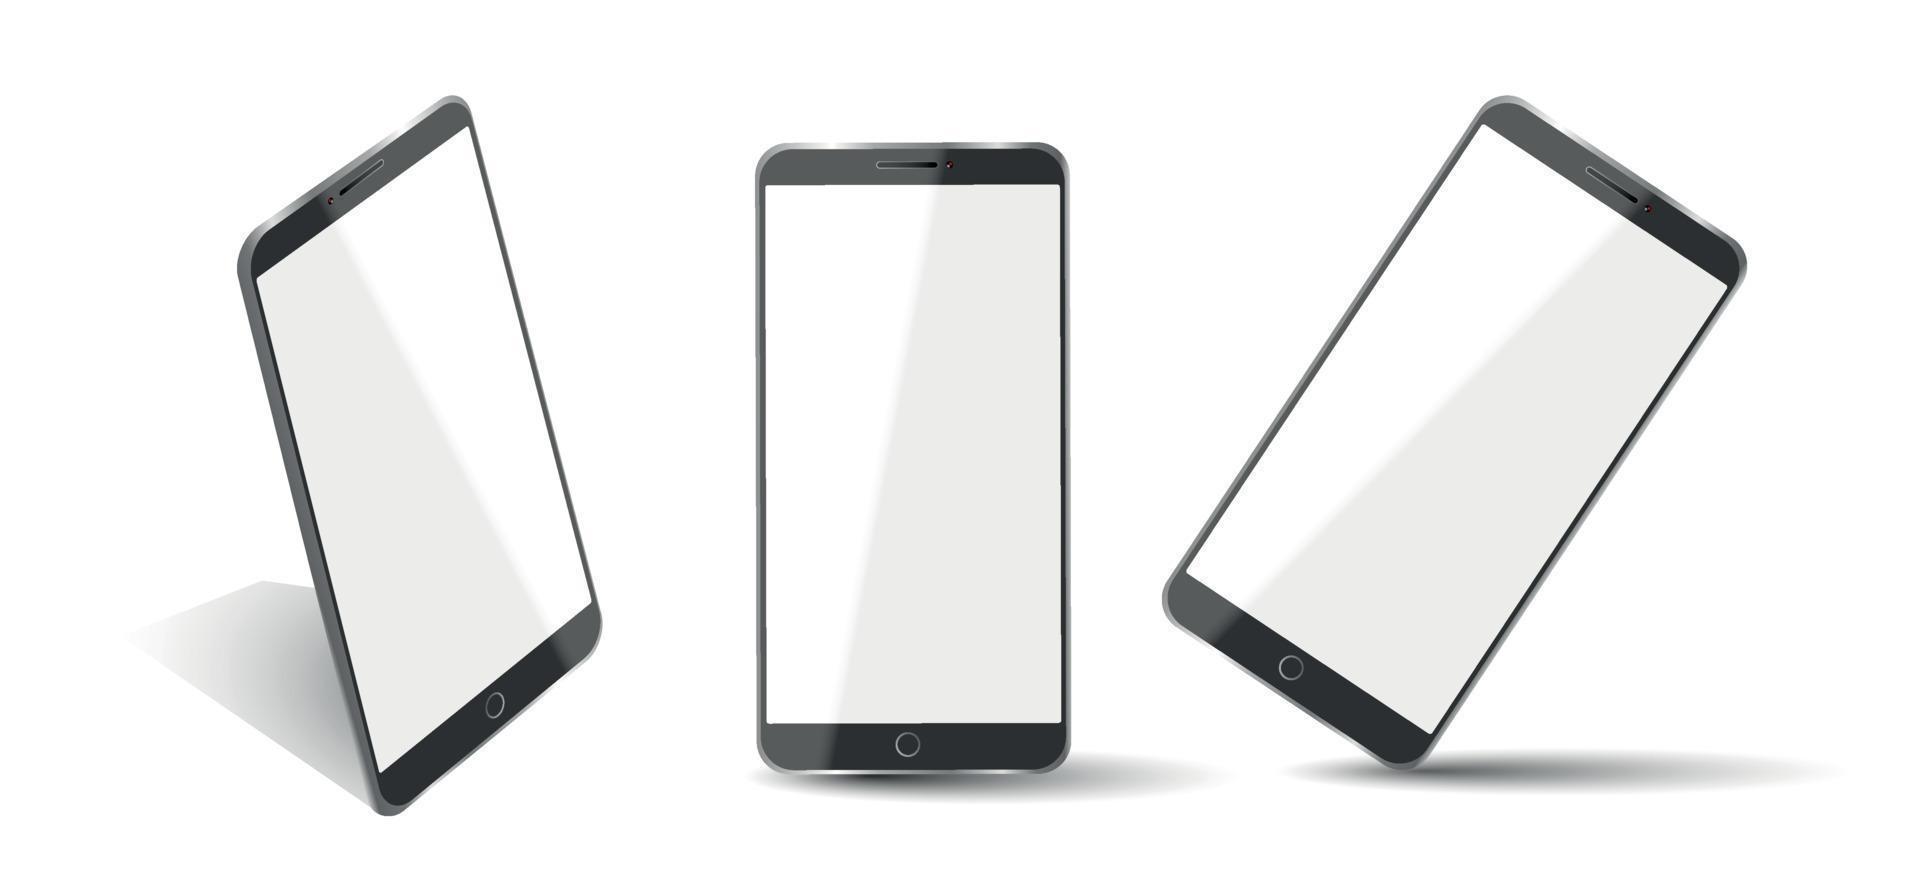 realistisch smartphonemodel. mobiel frame met blanco display geïsoleerde sjablonen, telefoon verschillende hoeken bekeken. vector mobiel apparaatconcept